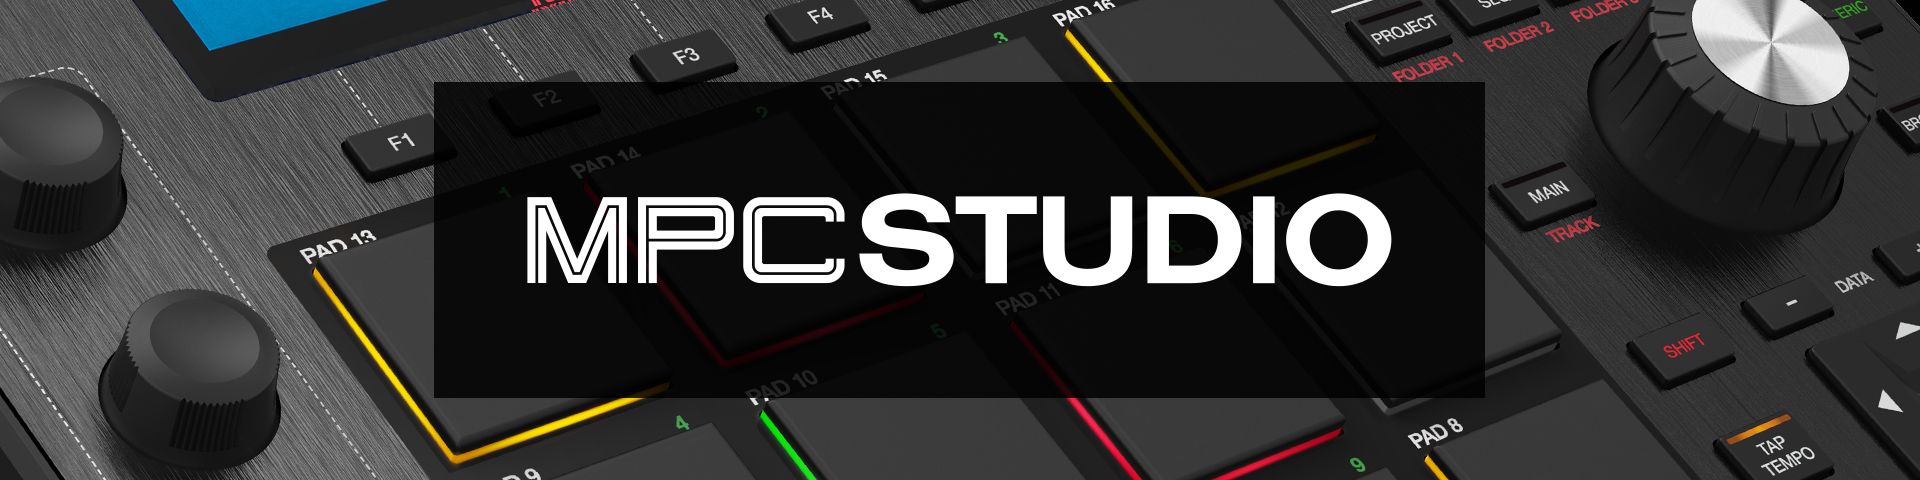 MPC Studio Black Pad Controller for MPC DAW | Akai Pro